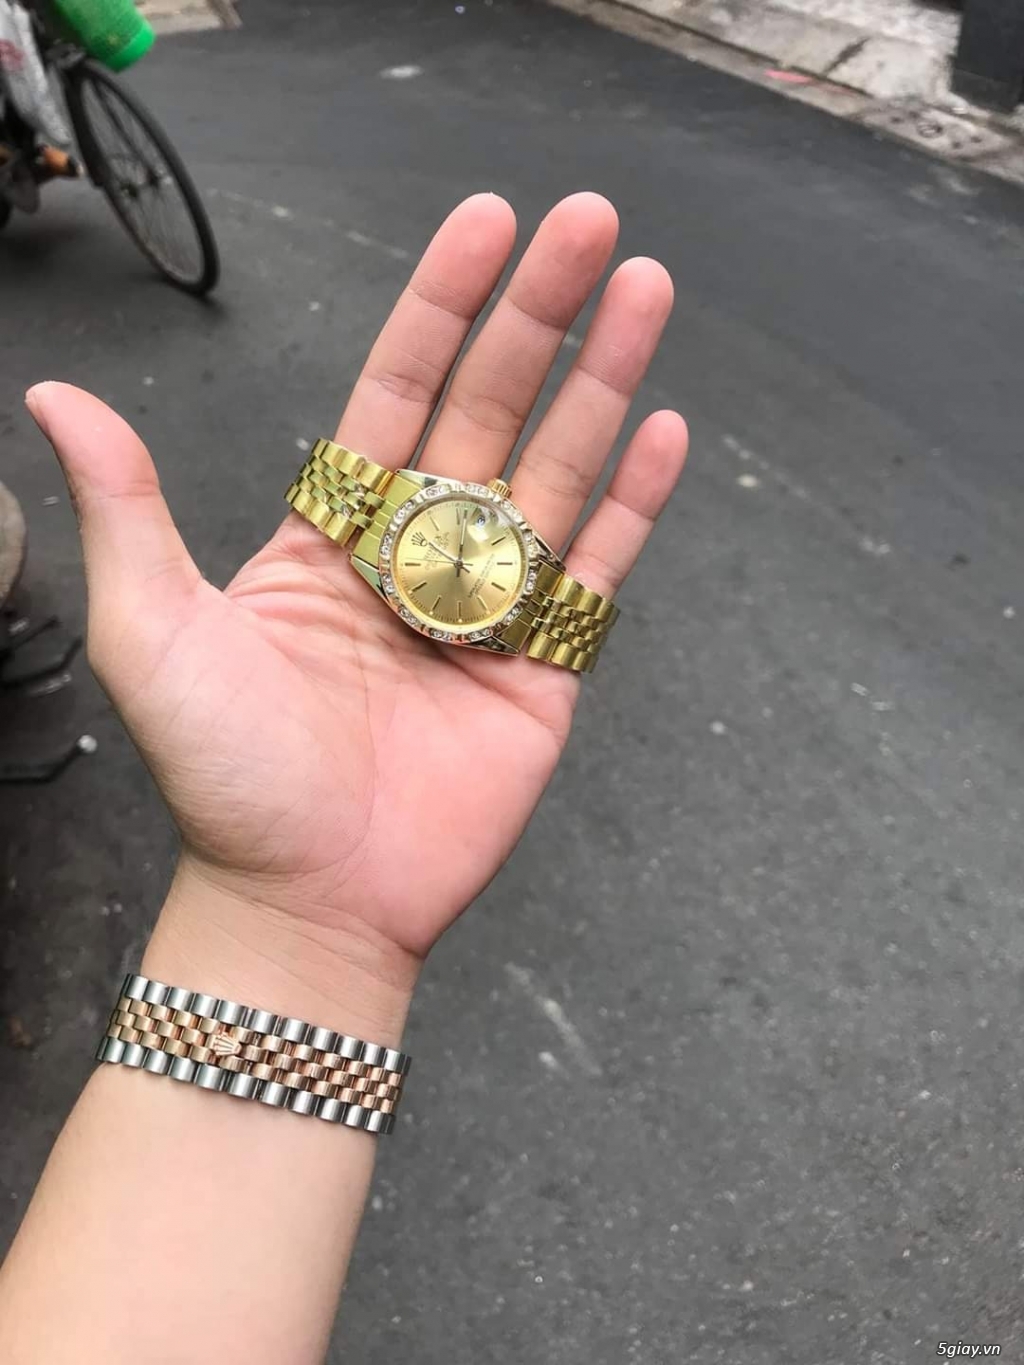 Thanh lý 1 em đồng hồ tự động mạ vàng, size 38mm